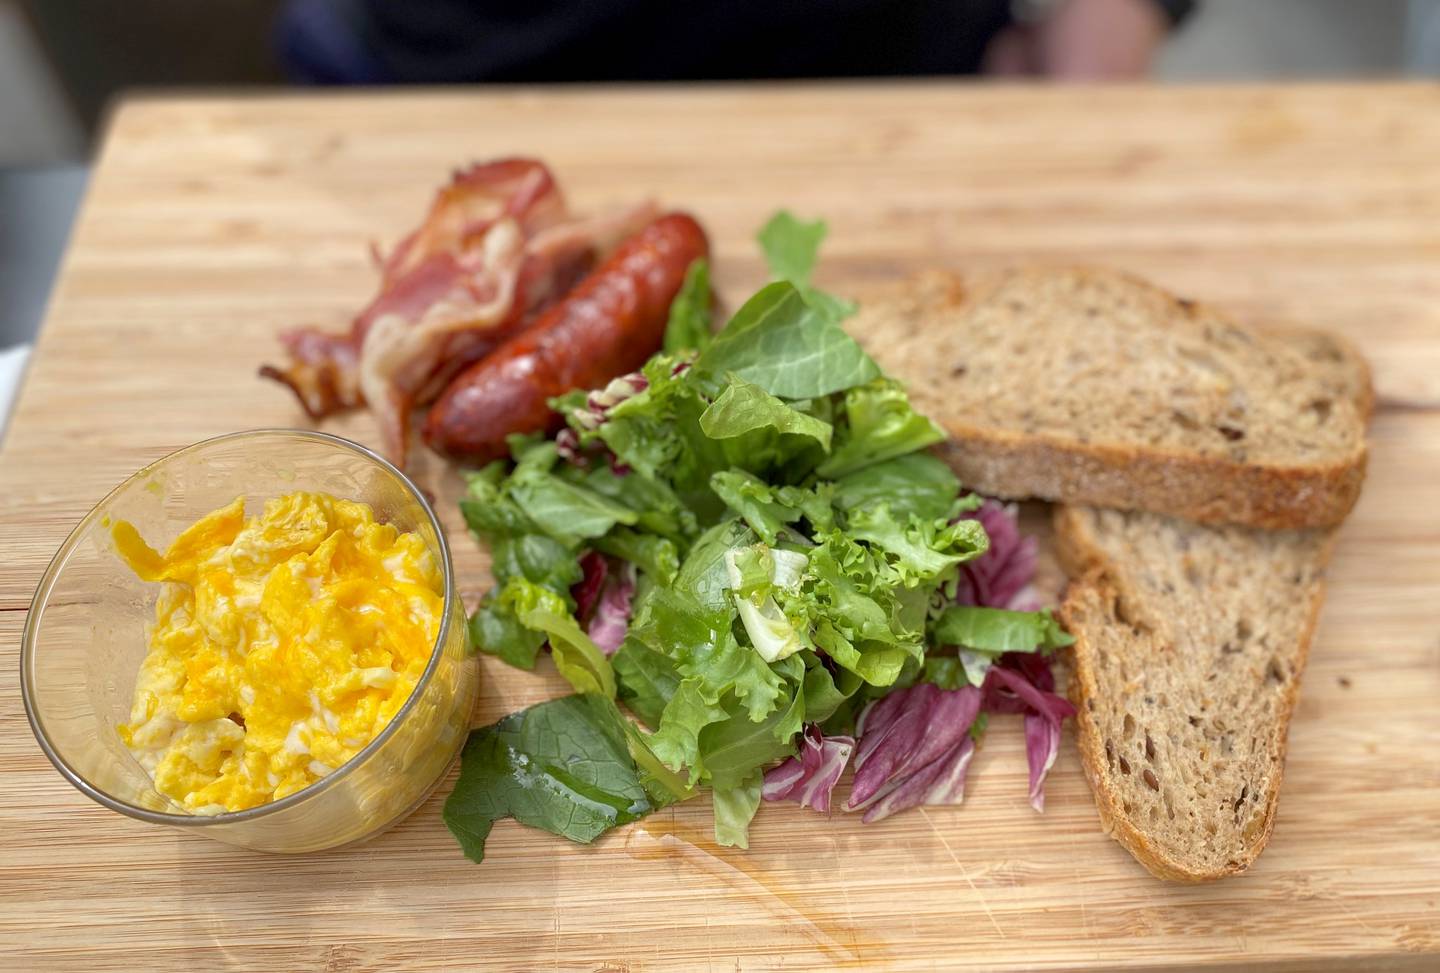 Dette er lunsjplanken Vespa classic. Den inneholder chorizopølse, bacon, eggerøre, salat og ferskt brød.